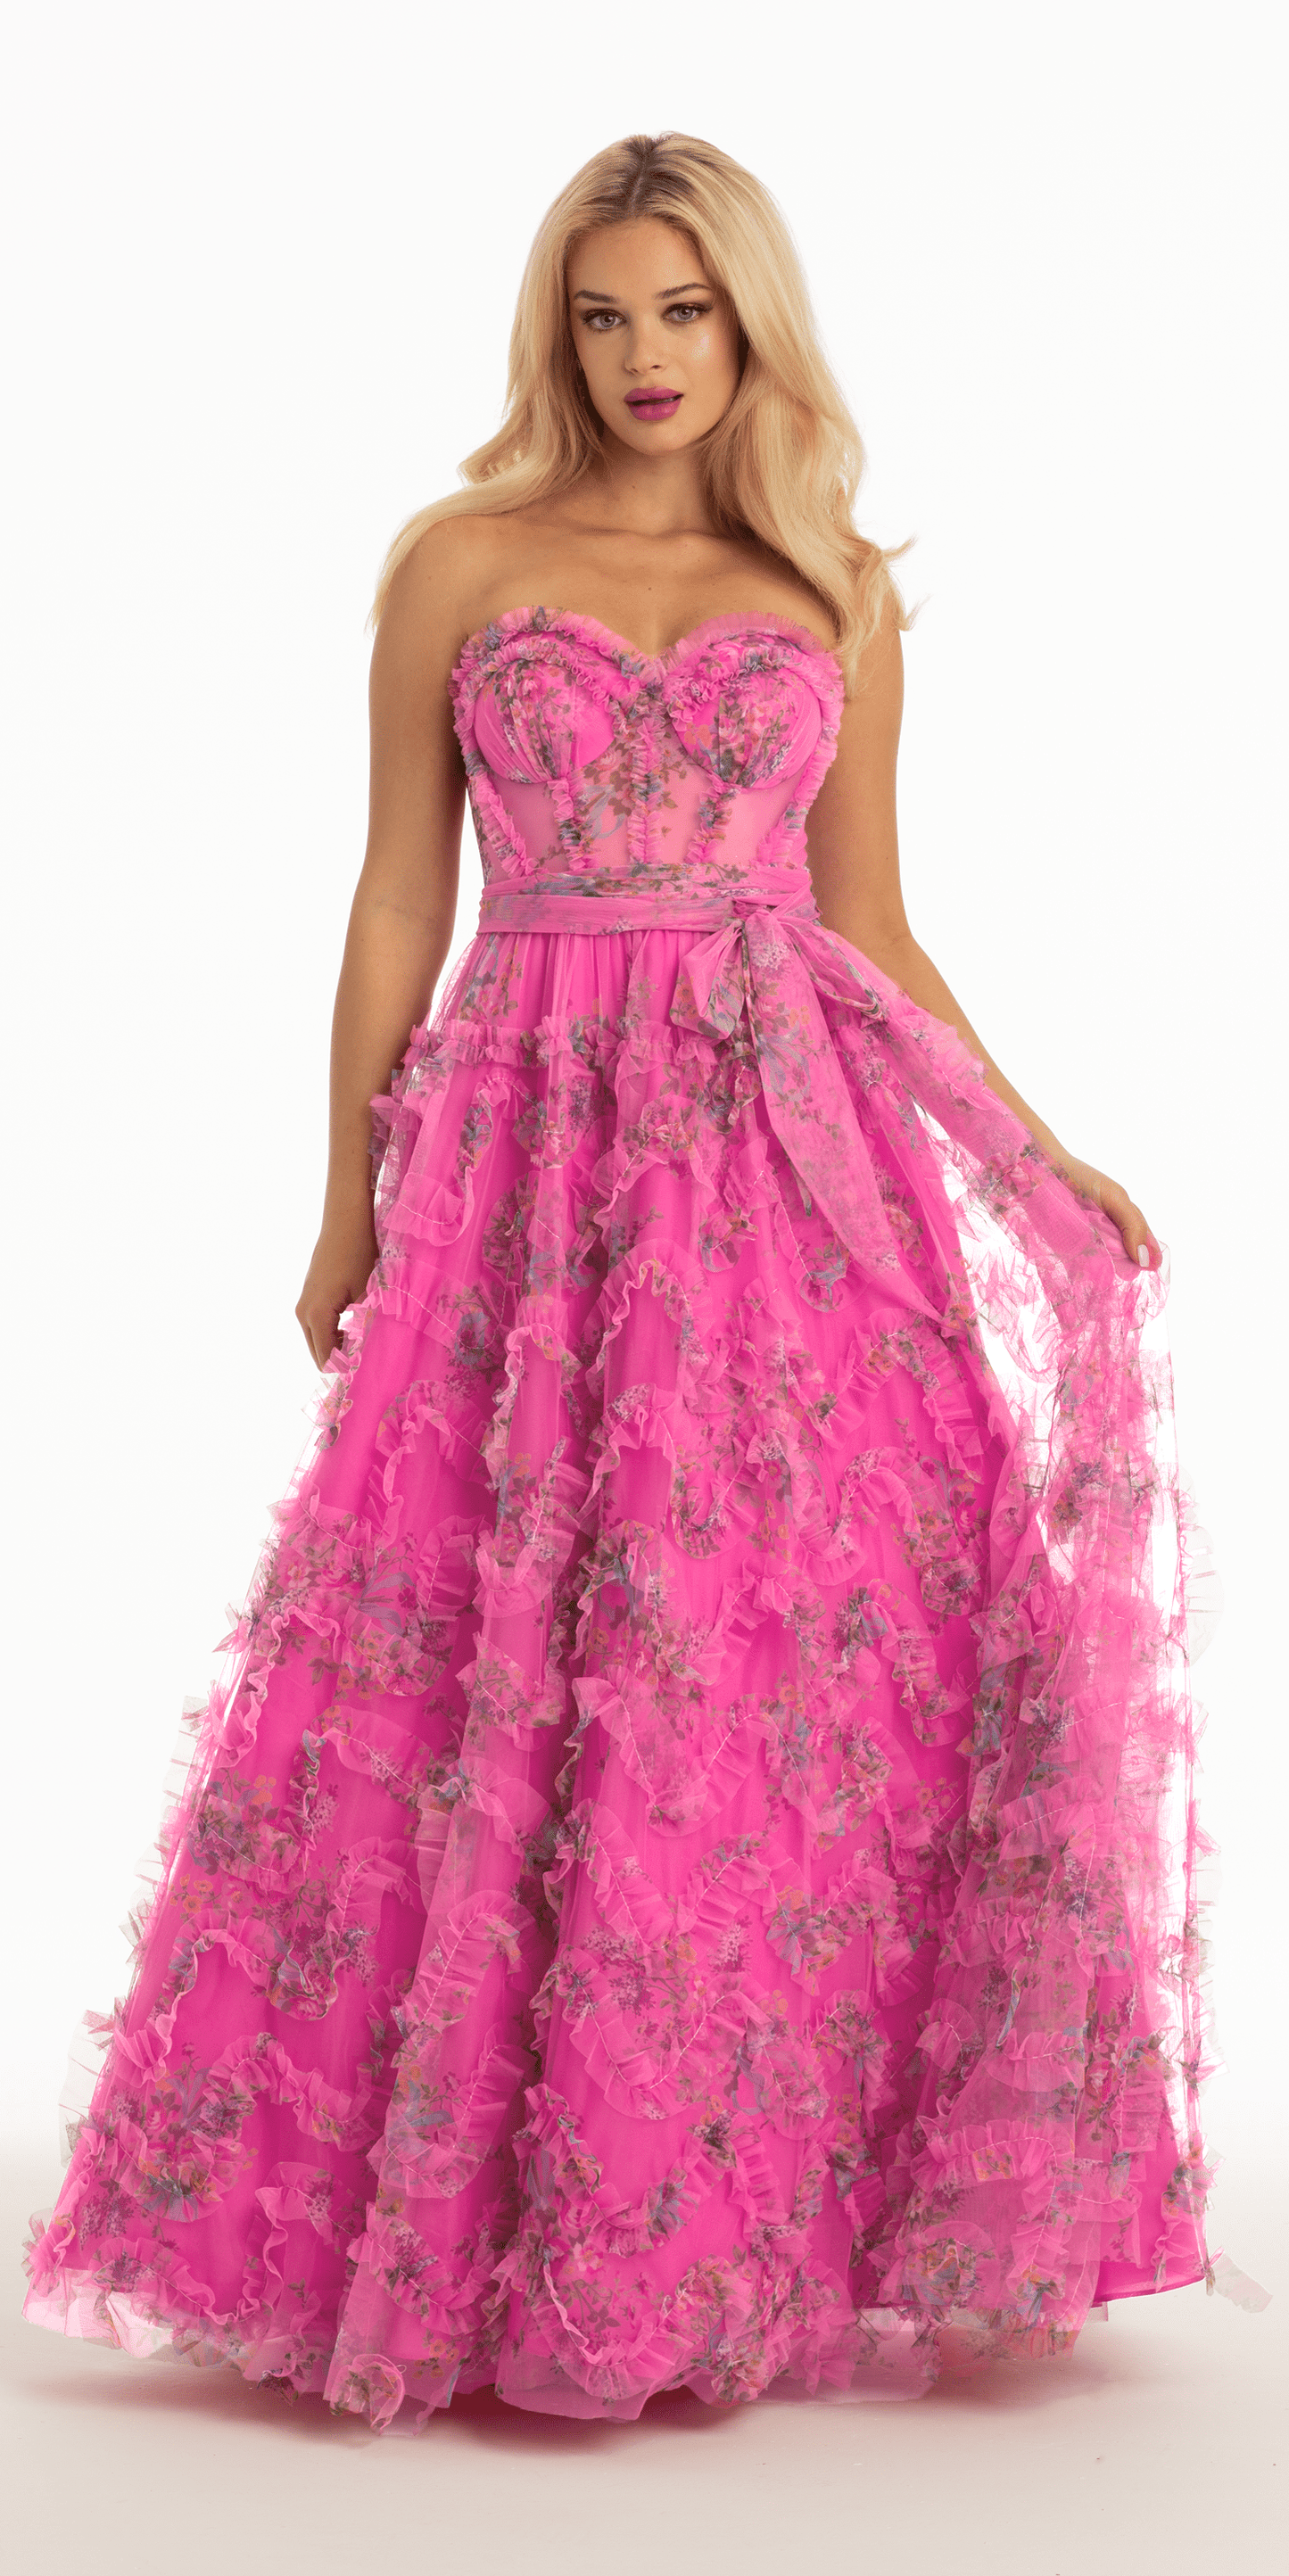 La vie en rose” ▫️Floral corset style DRESS 🏷4661/342 💵49.90 C